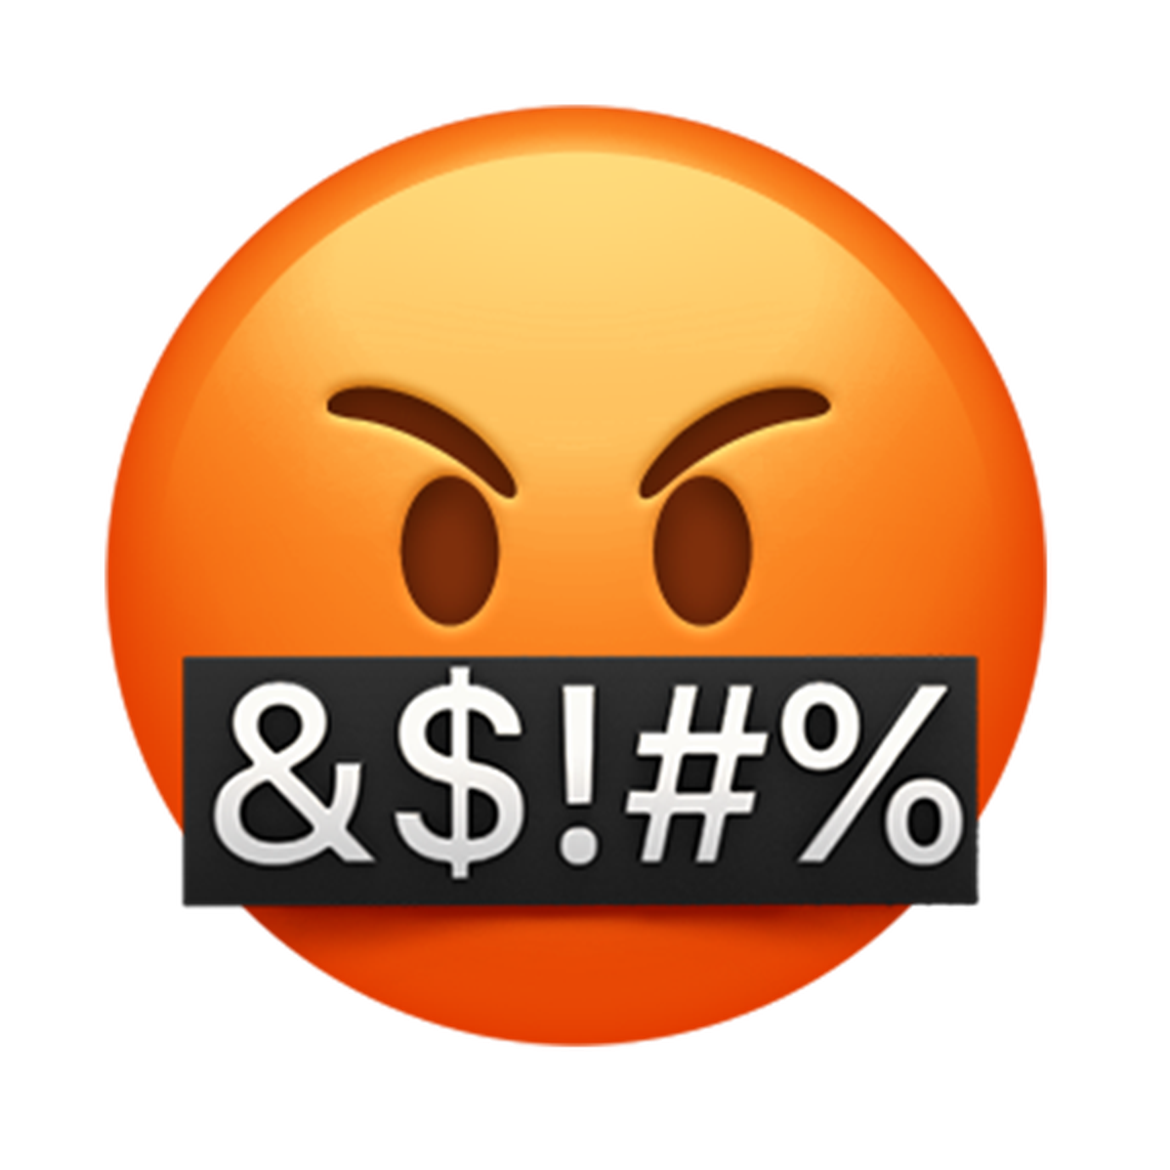 Angry Crying Emoji Free PNG Image